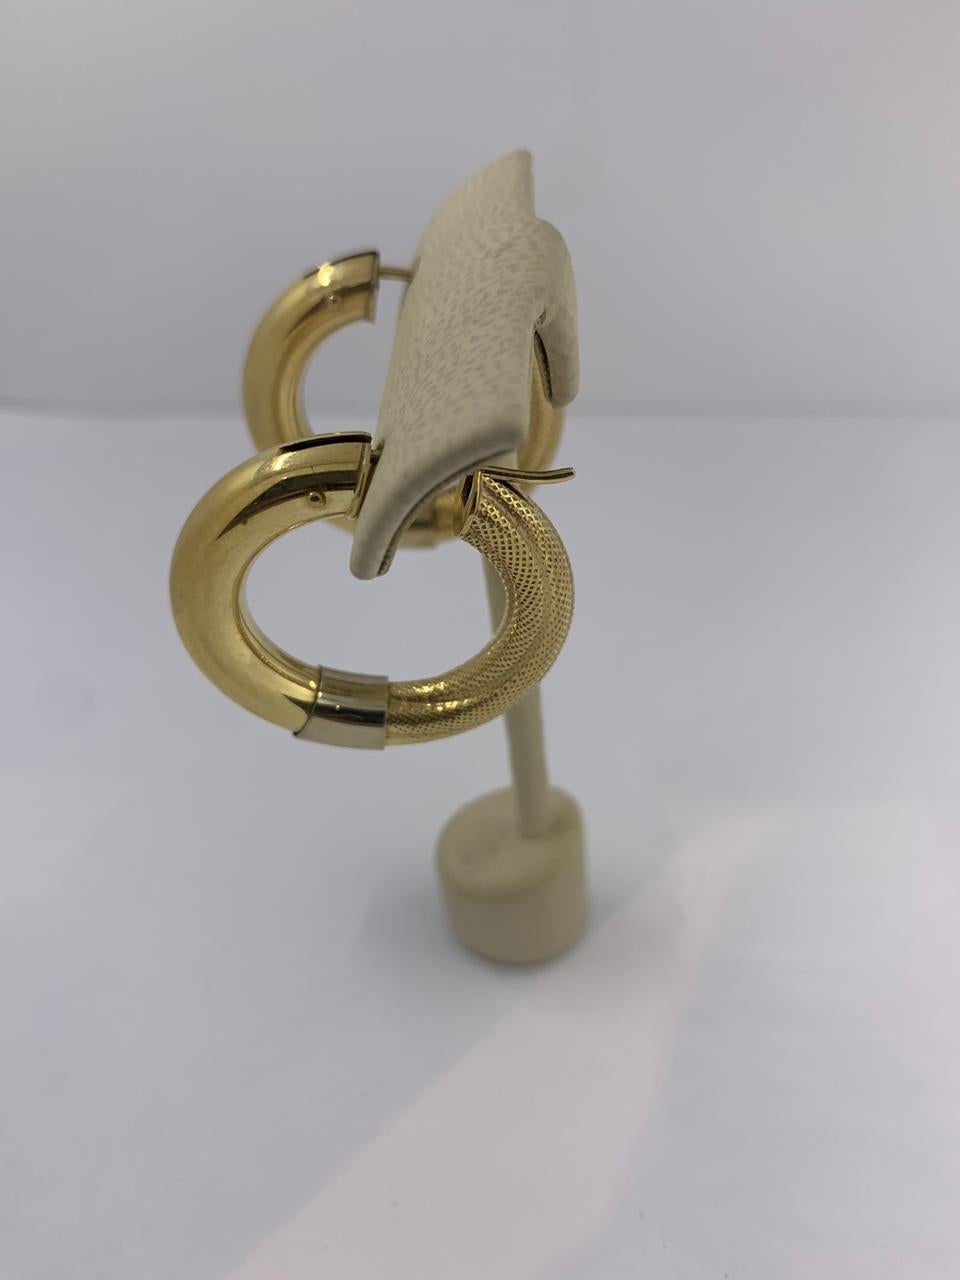 Gold-Ohrringe 14Kt
Ohrringe aus Weiß- und Gelbgold mit Pinsel und einfarbig
12-10024